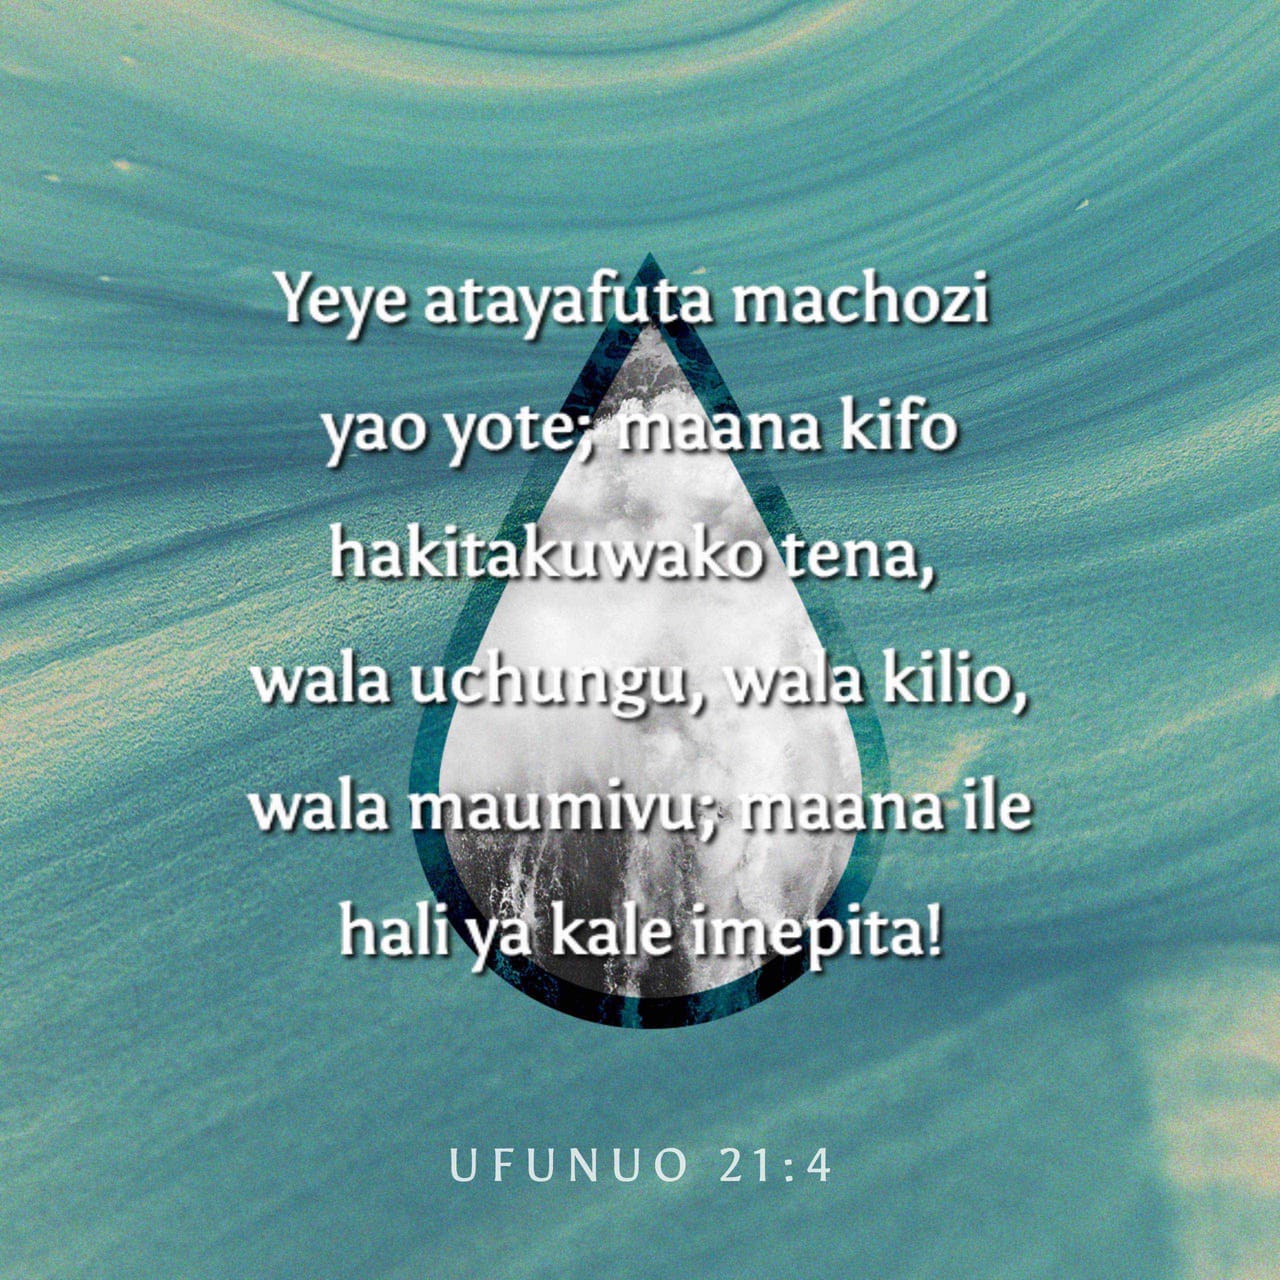 Ufu 21:4 Naye atafuta kila chozi katika macho yao, wala mauti haitakuwapo  tena; wala maombolezo, wala kilio, wala maumivu hayatakuwapo tena; kwa kuwa  mambo ya kwanza yamekwisha kupita.